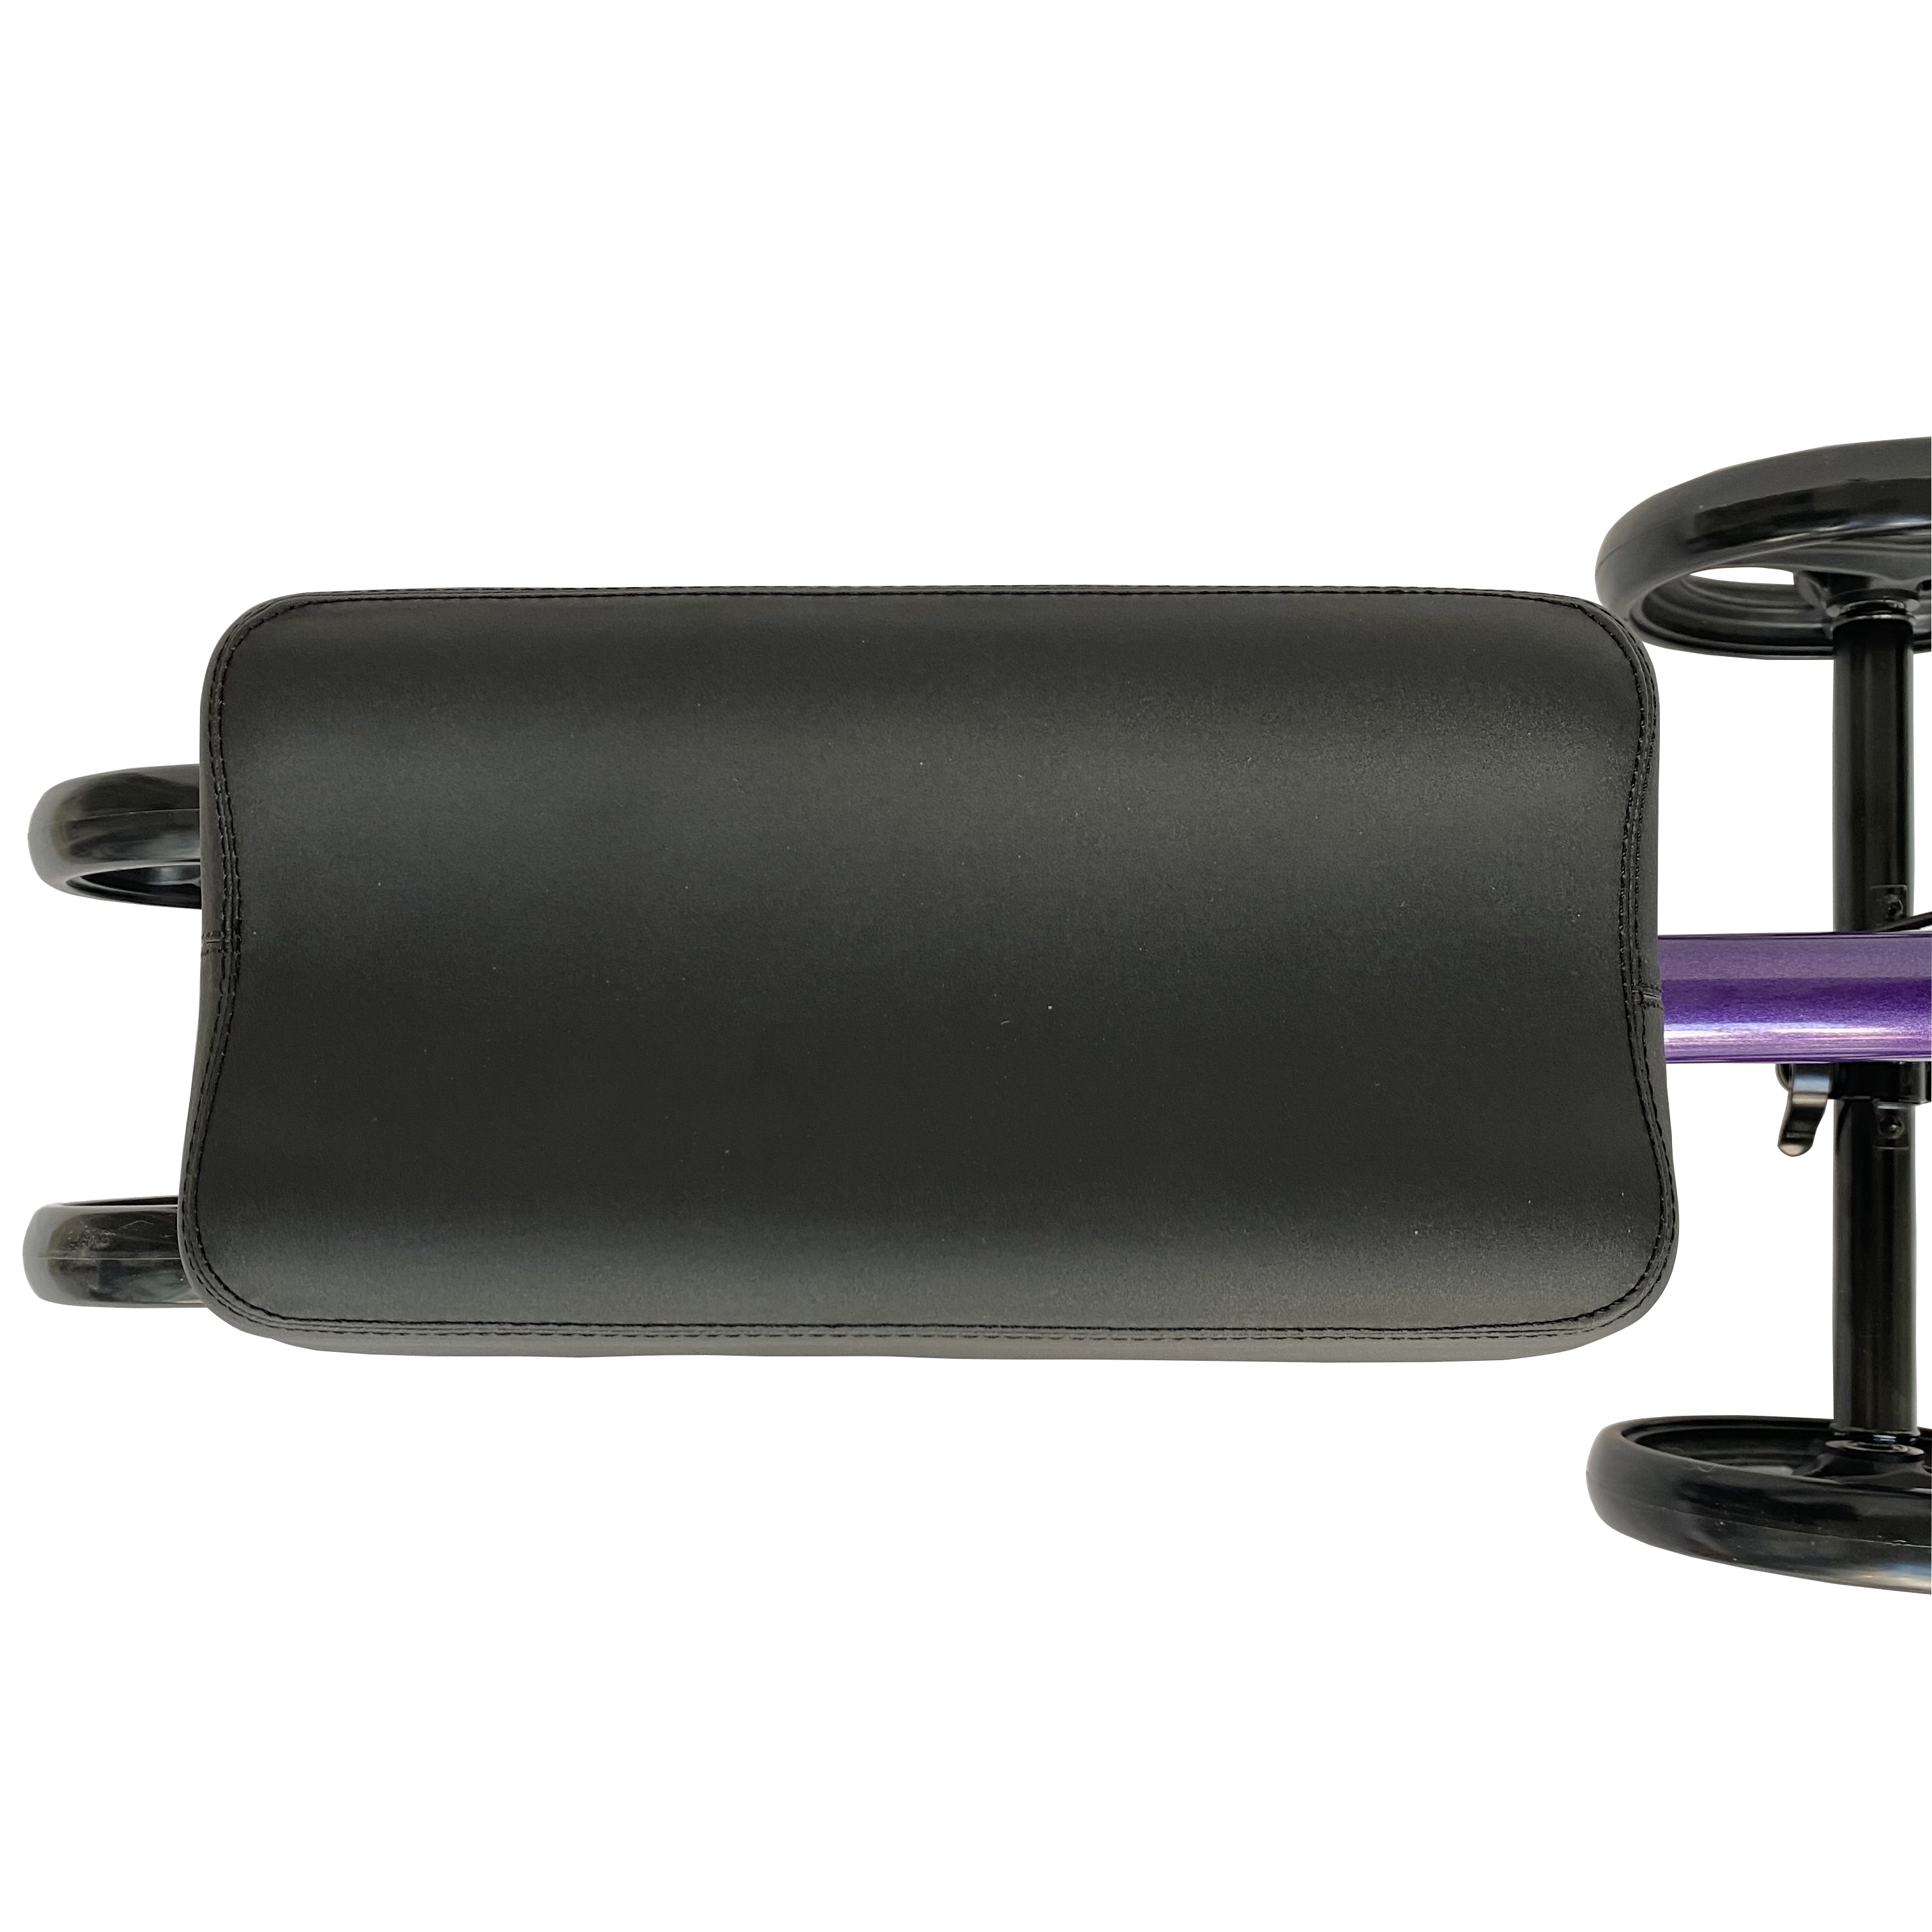 Sterowany kolanobójca deluxe medyczny skuter dla urazów stóp kompaktowe kule alternatywne